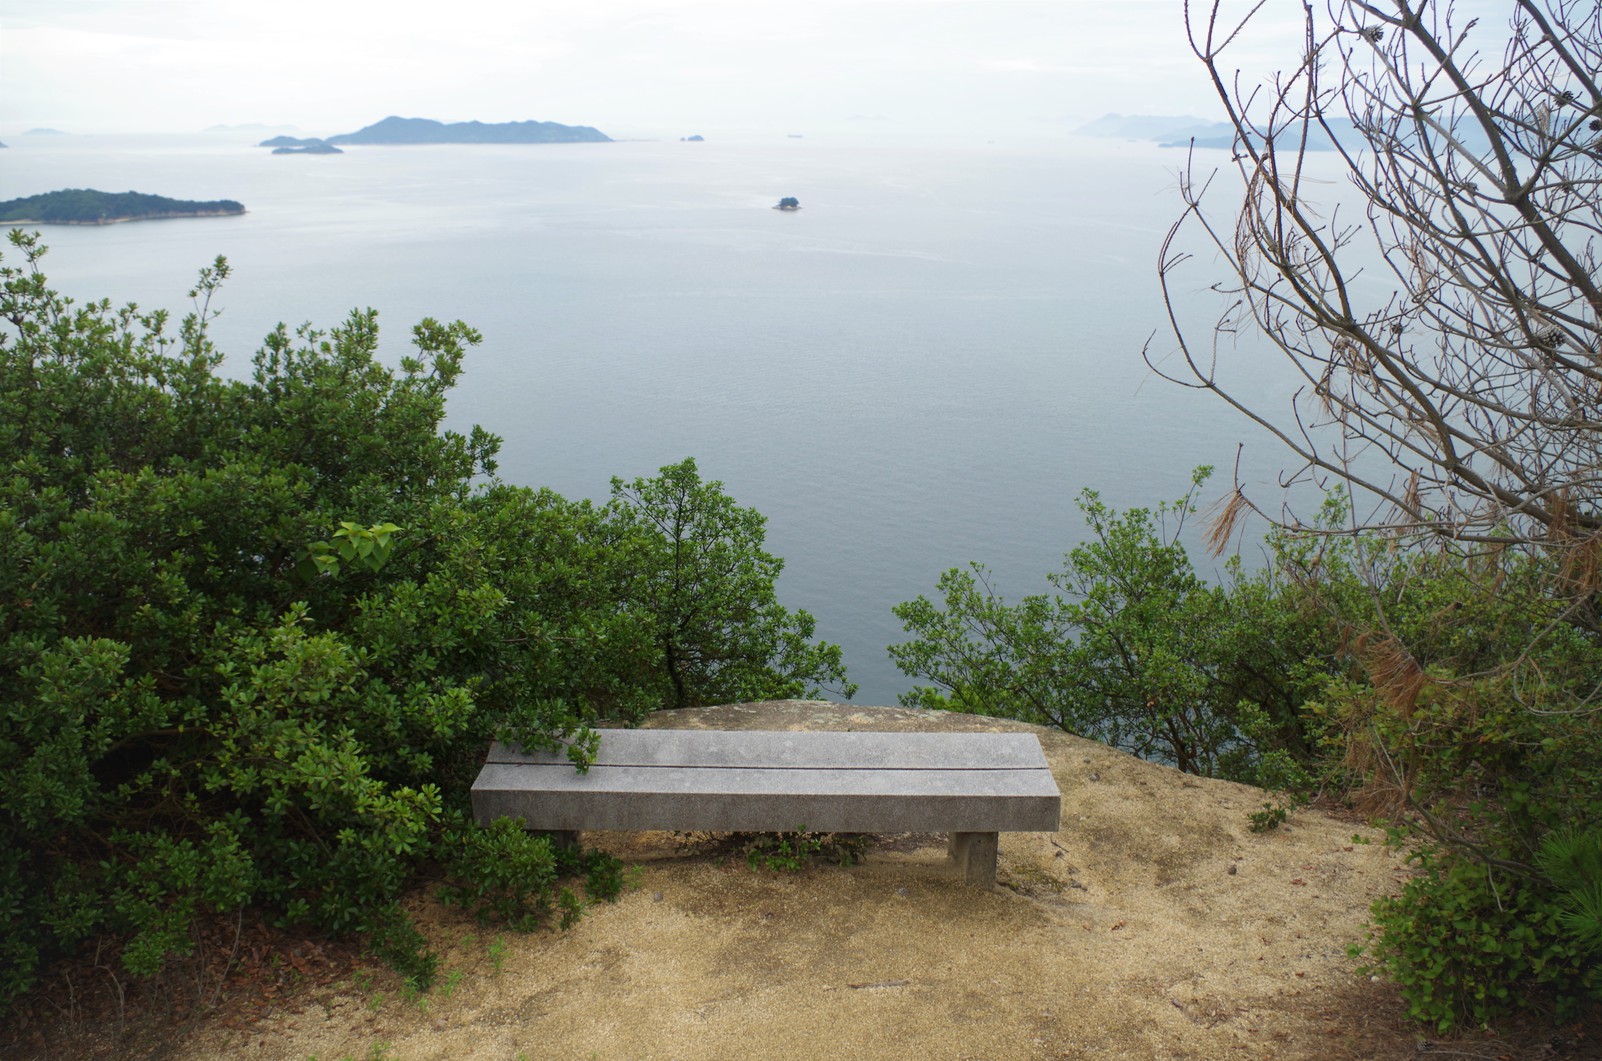 島内トレッキングコースには各所に休憩できるベンチがあります